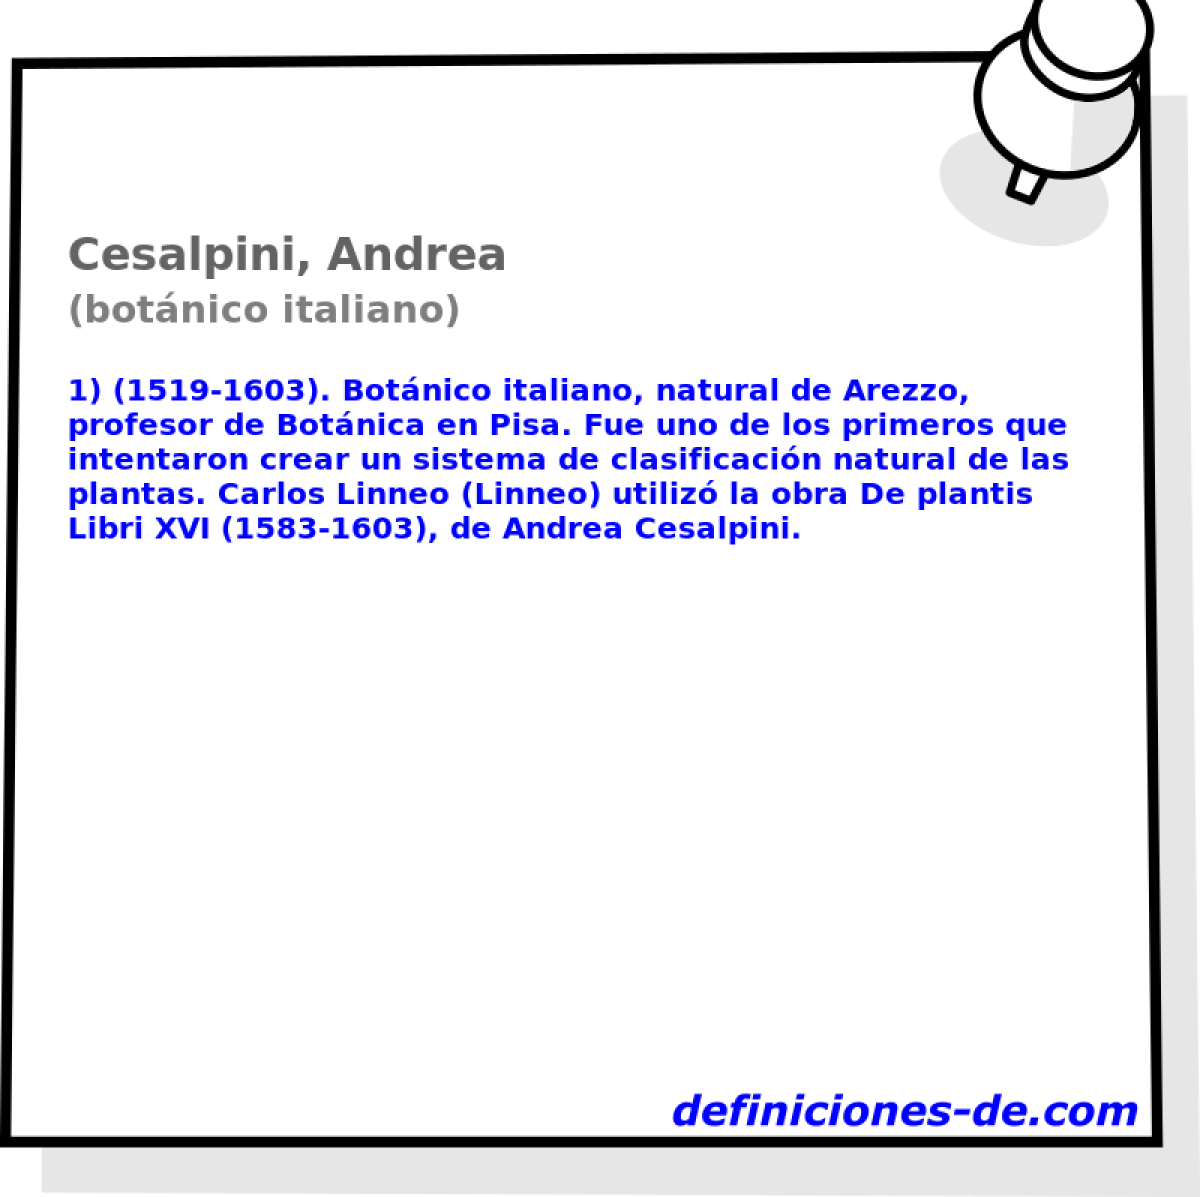 Cesalpini, Andrea (botnico italiano)